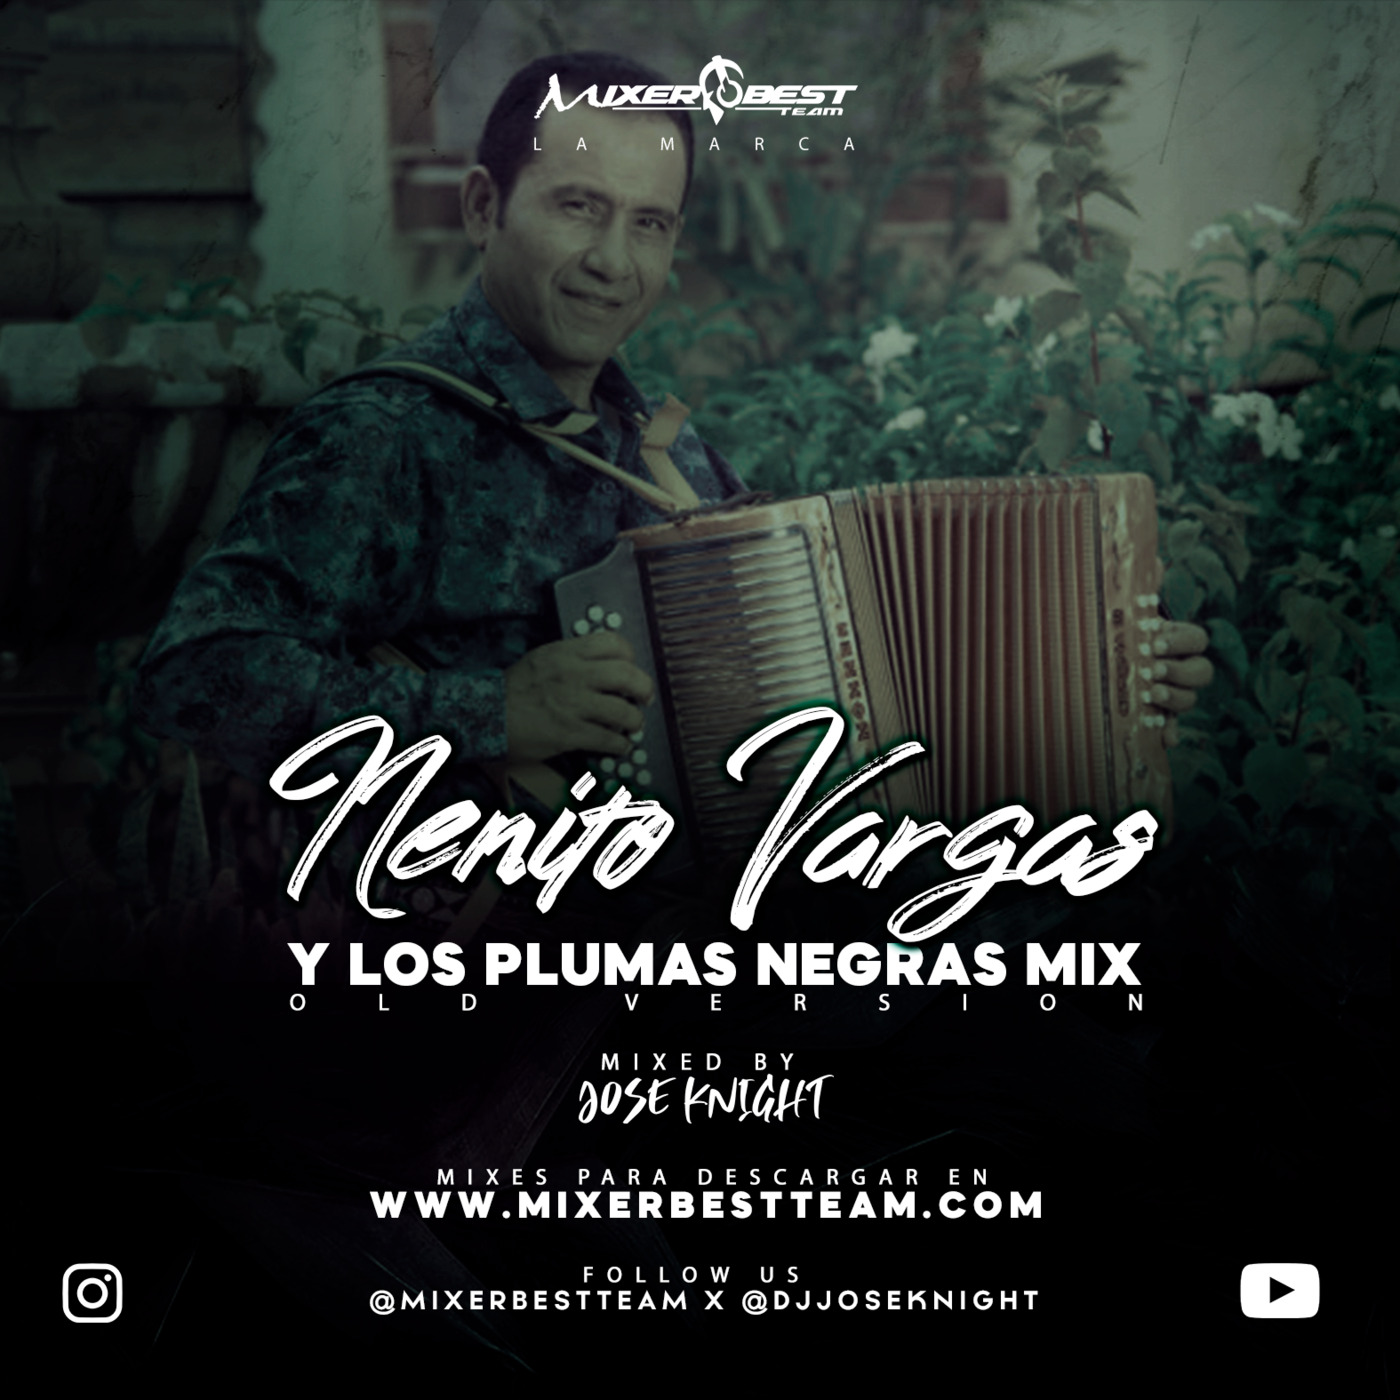 Nenito_Vargas_&_Los_Plumas_Negras_Mix_(OldVersion)_@DJJOSEKNIGHT_@MIXERBESTTEAM.mp3